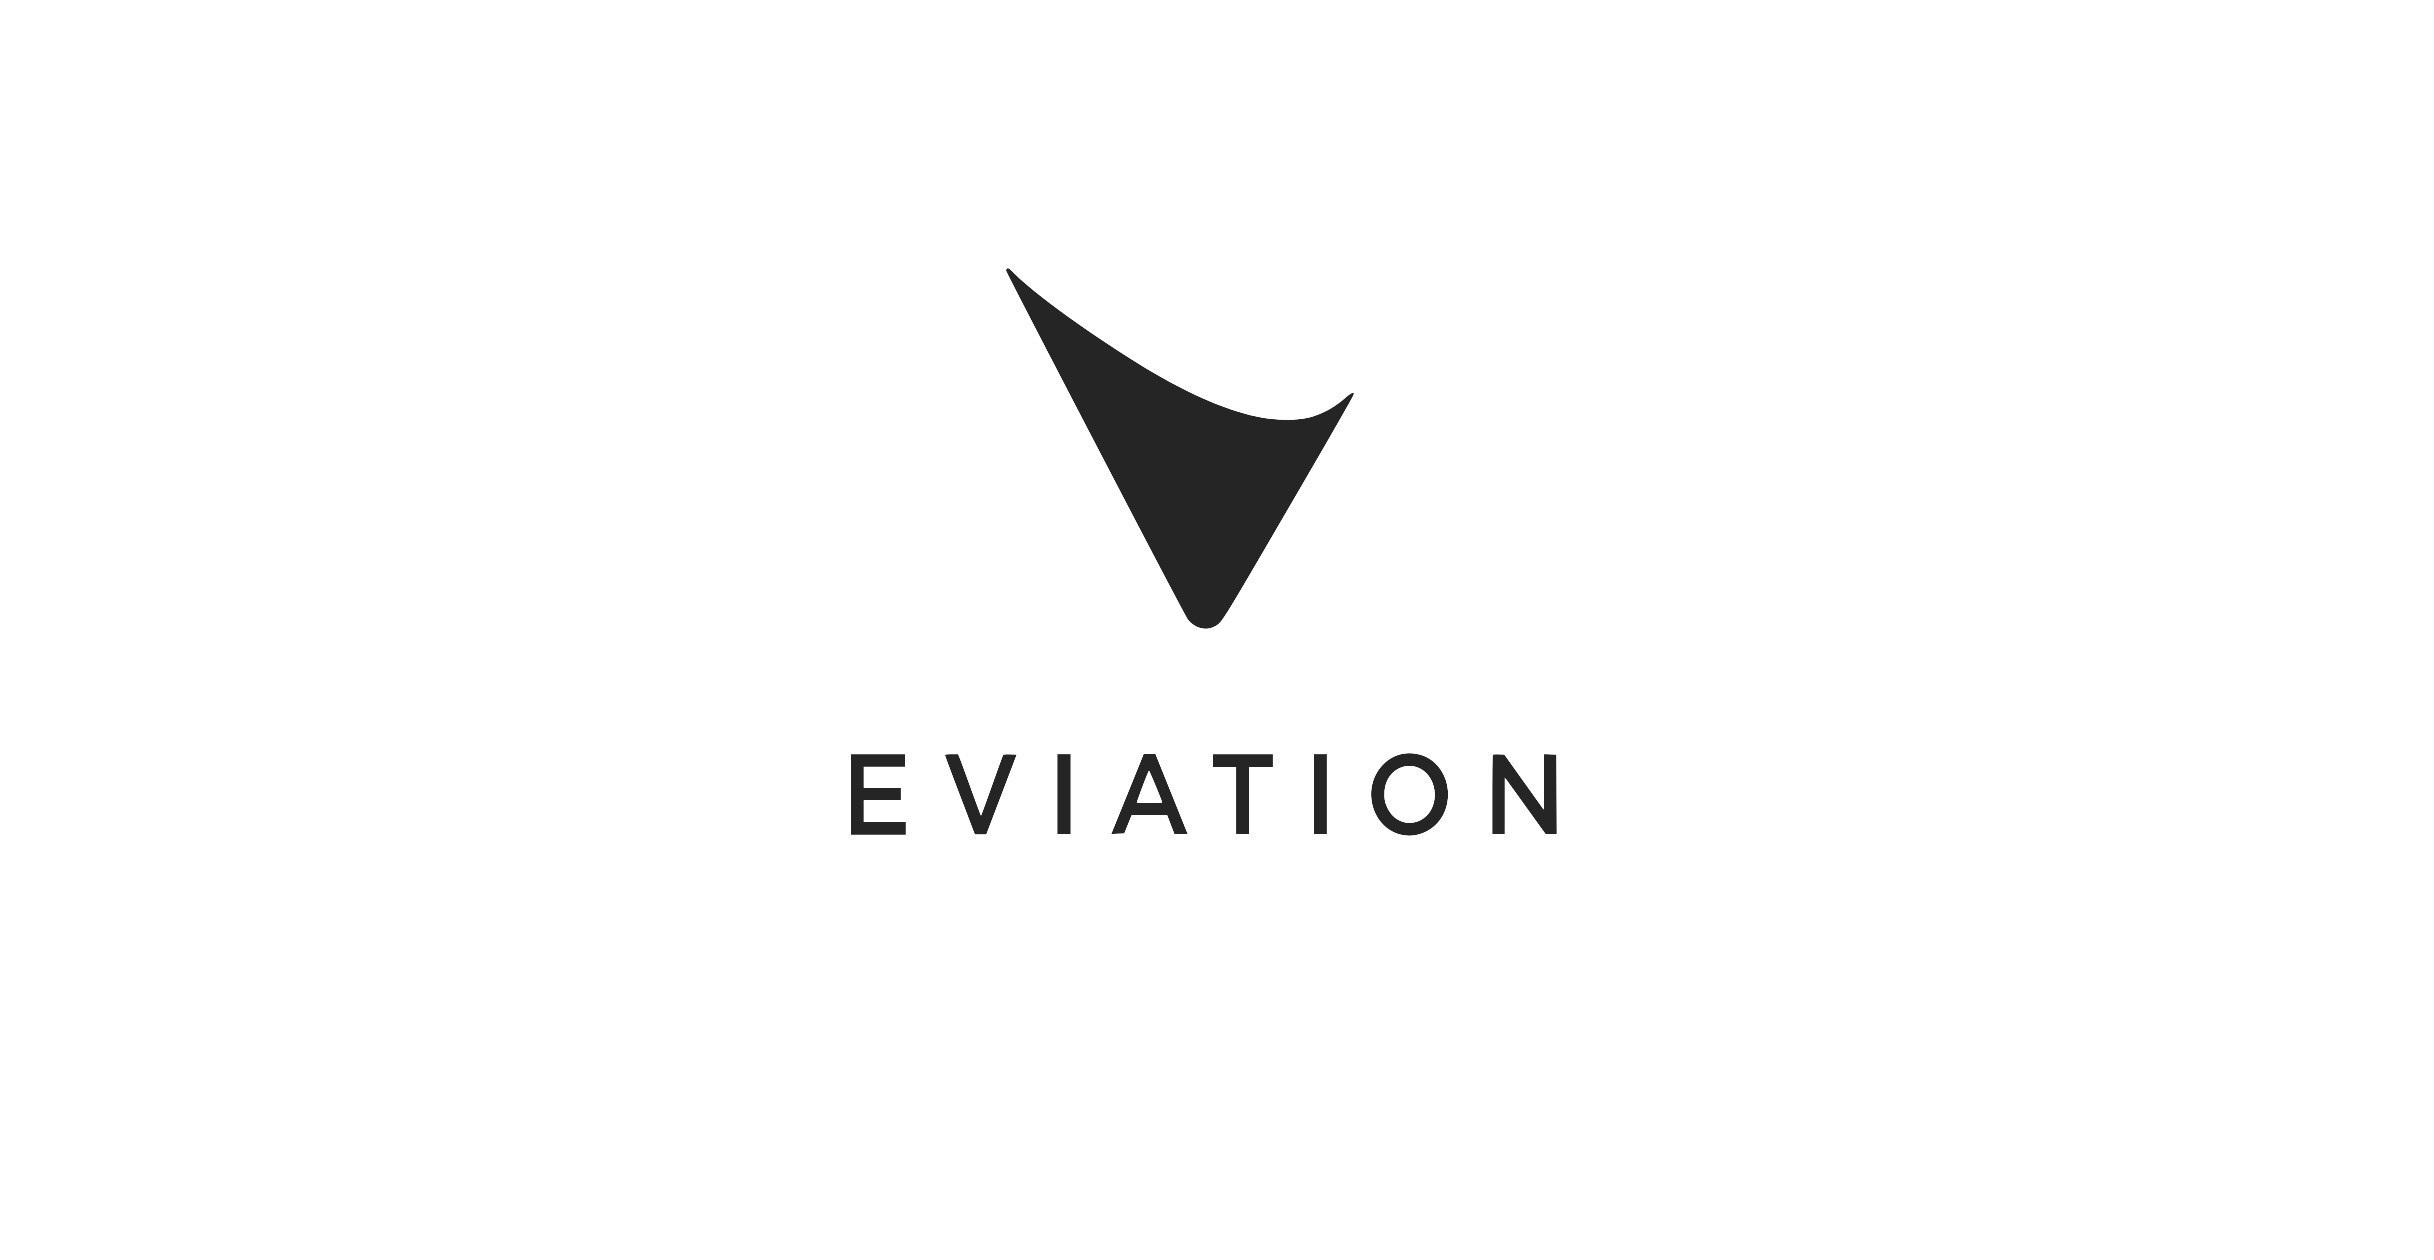 Eviation logo. (PRNewsfoto/Eviation)